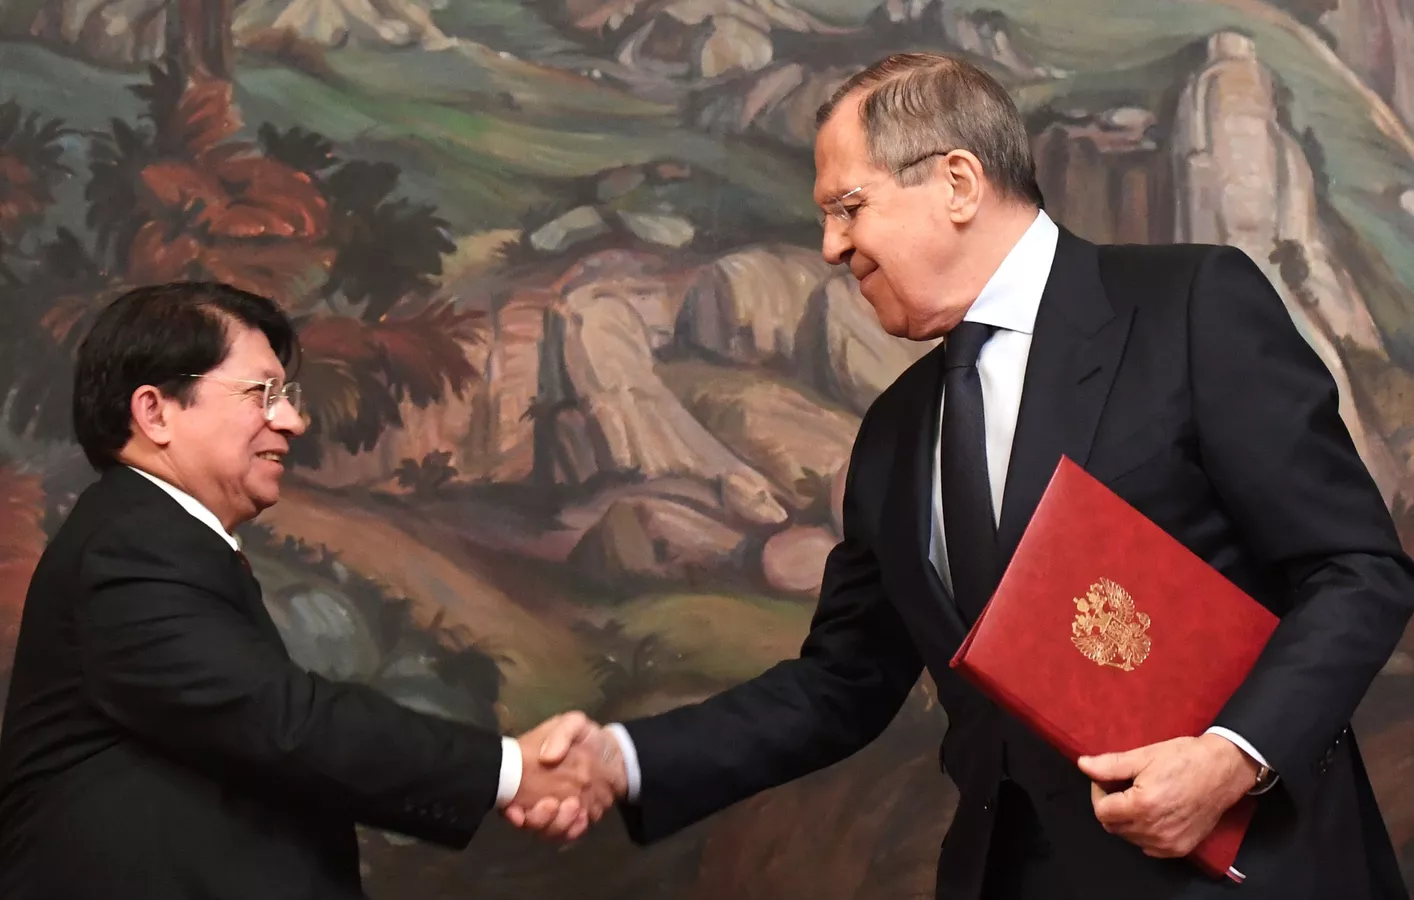 Agrega que Lavrov y Moncada subrayaron la intención común de apoyar los objetivos fundamentales de la Carta de las Naciones Unidas.